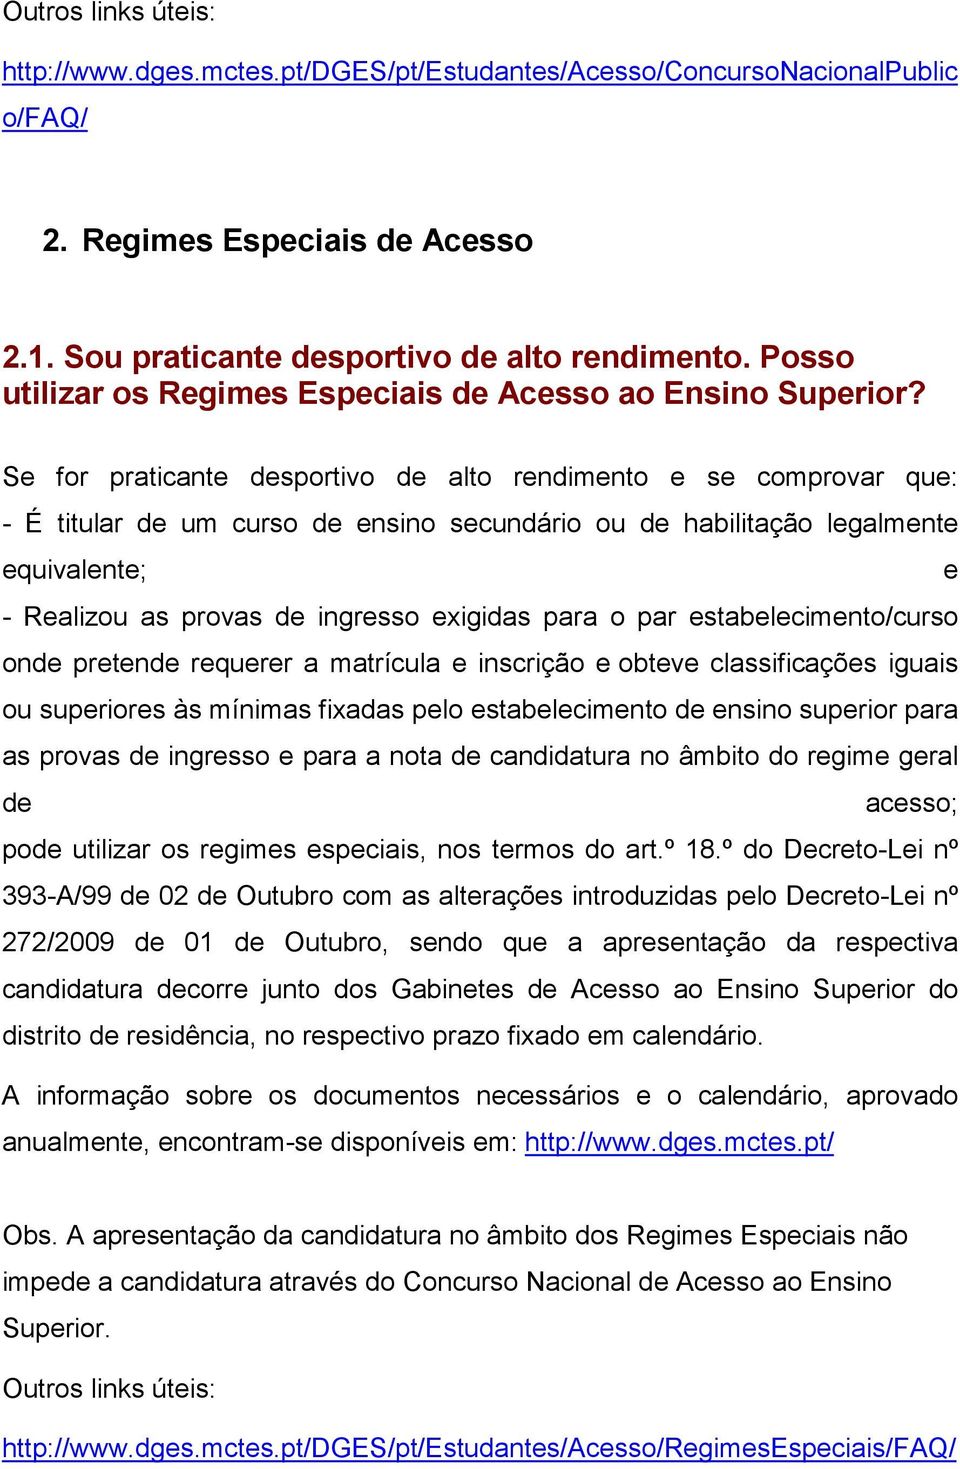 A ACESSO AO ENSINO SUPERIOR - PDF Free Download